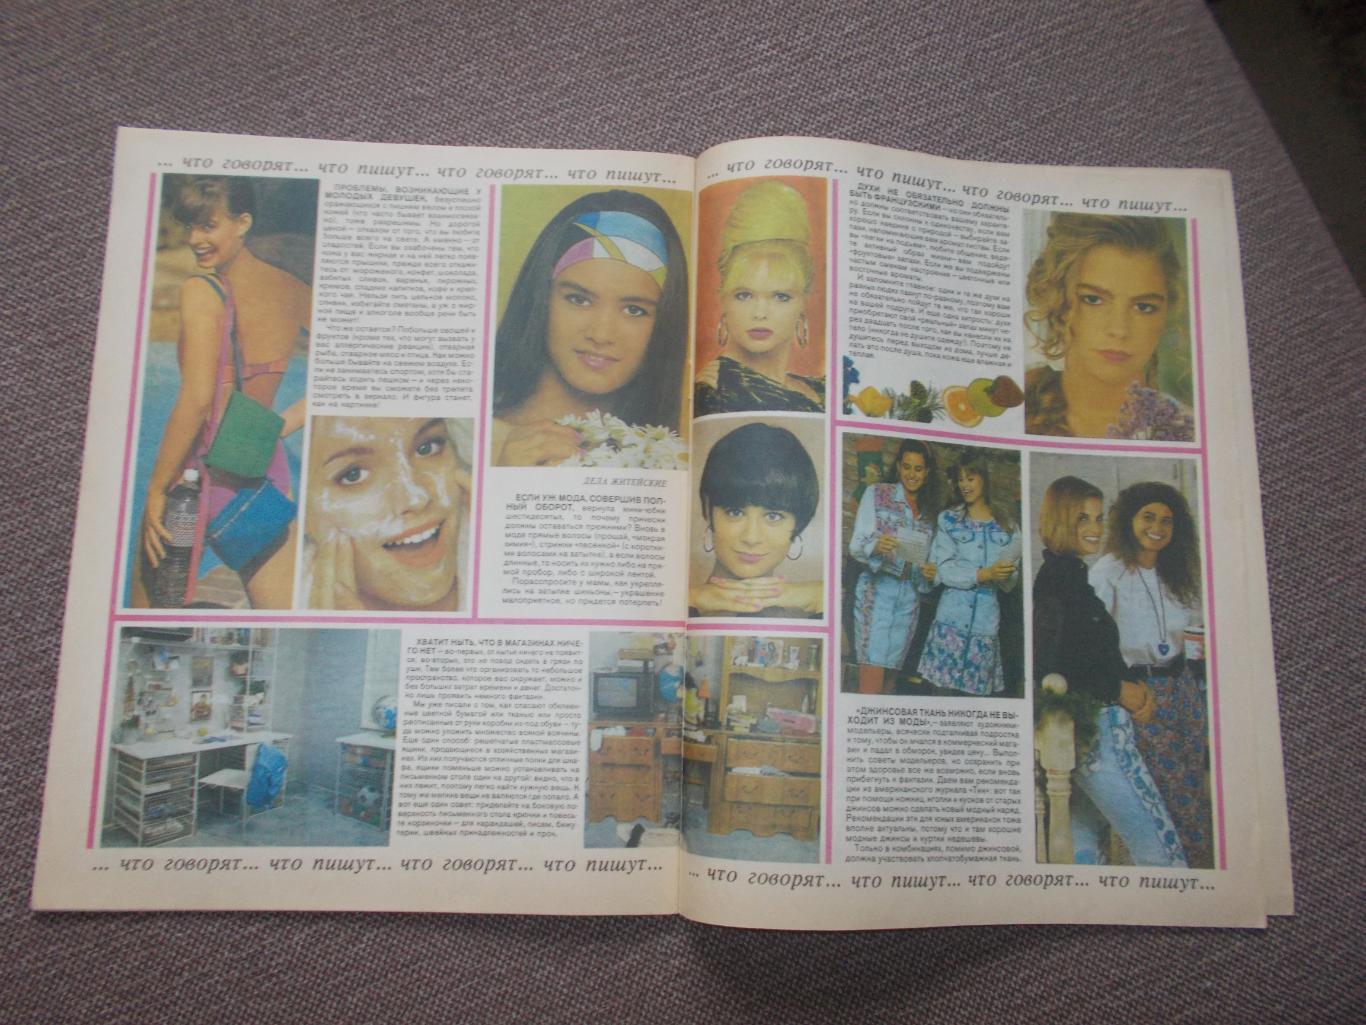 Журнал СССР :Ровесник№ 8 (август) 1991 г. (Молодежный музыкальный журнал) 4